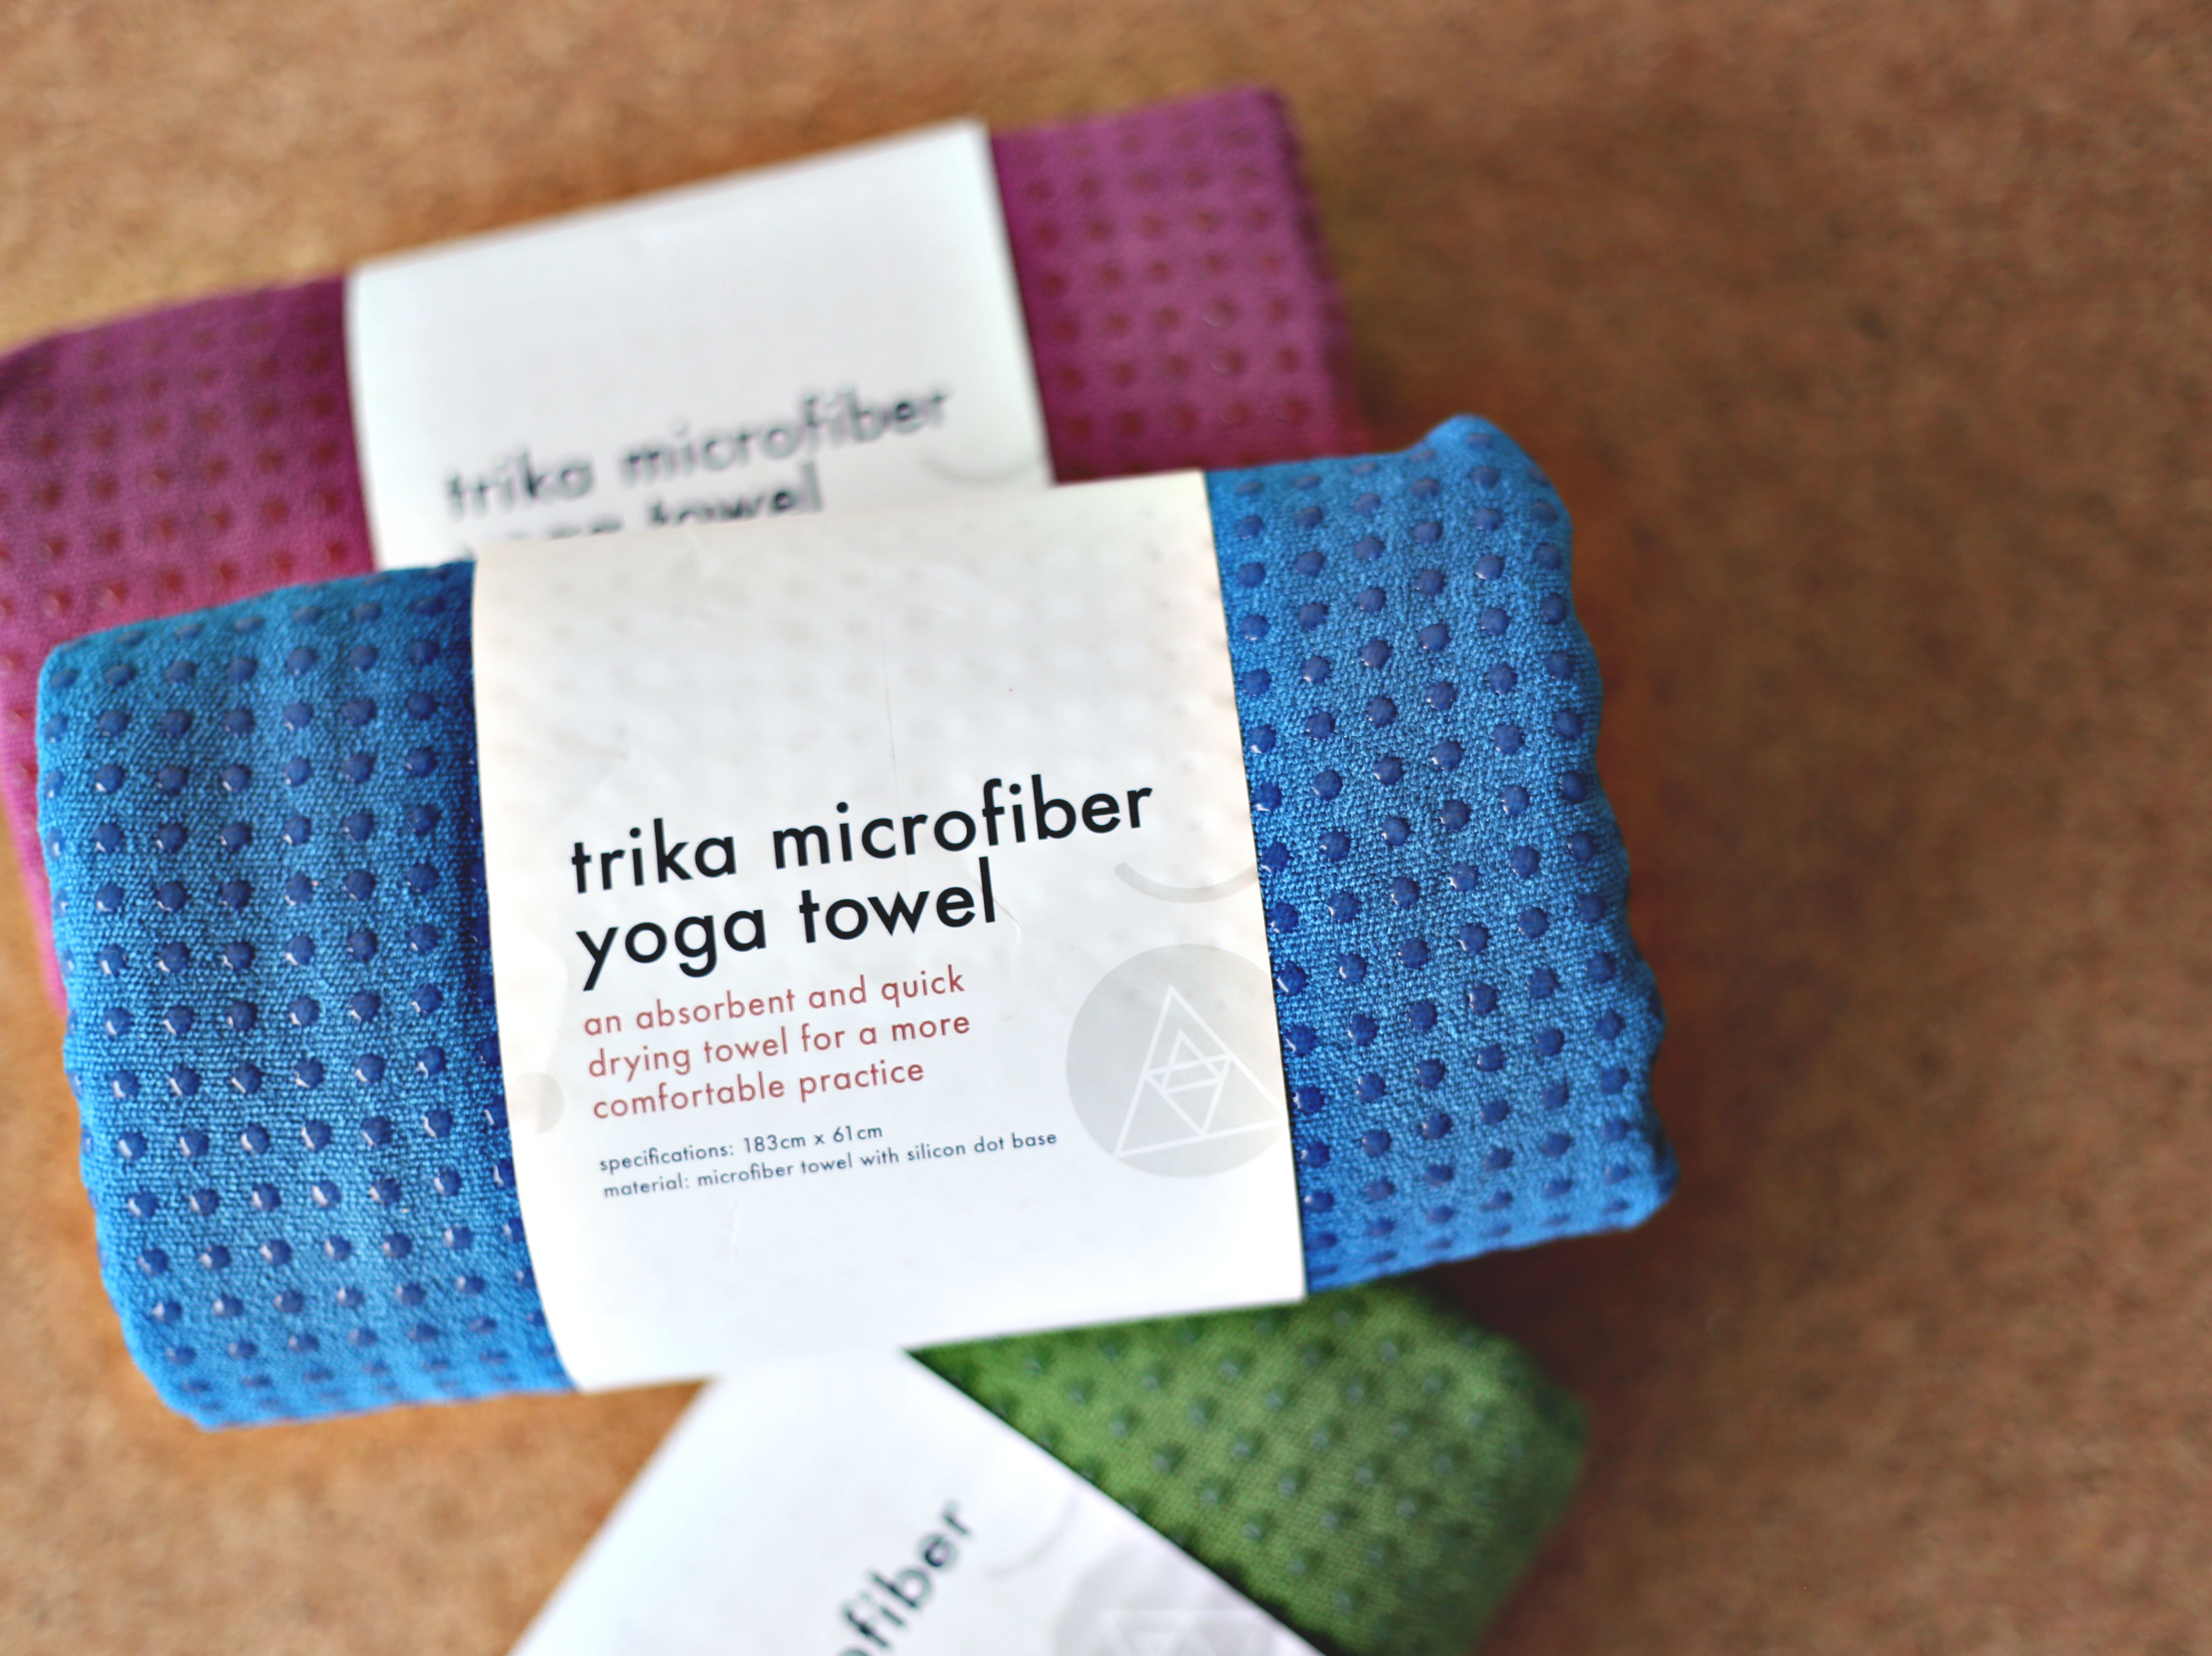 Trika Microfiber Yoga Towel